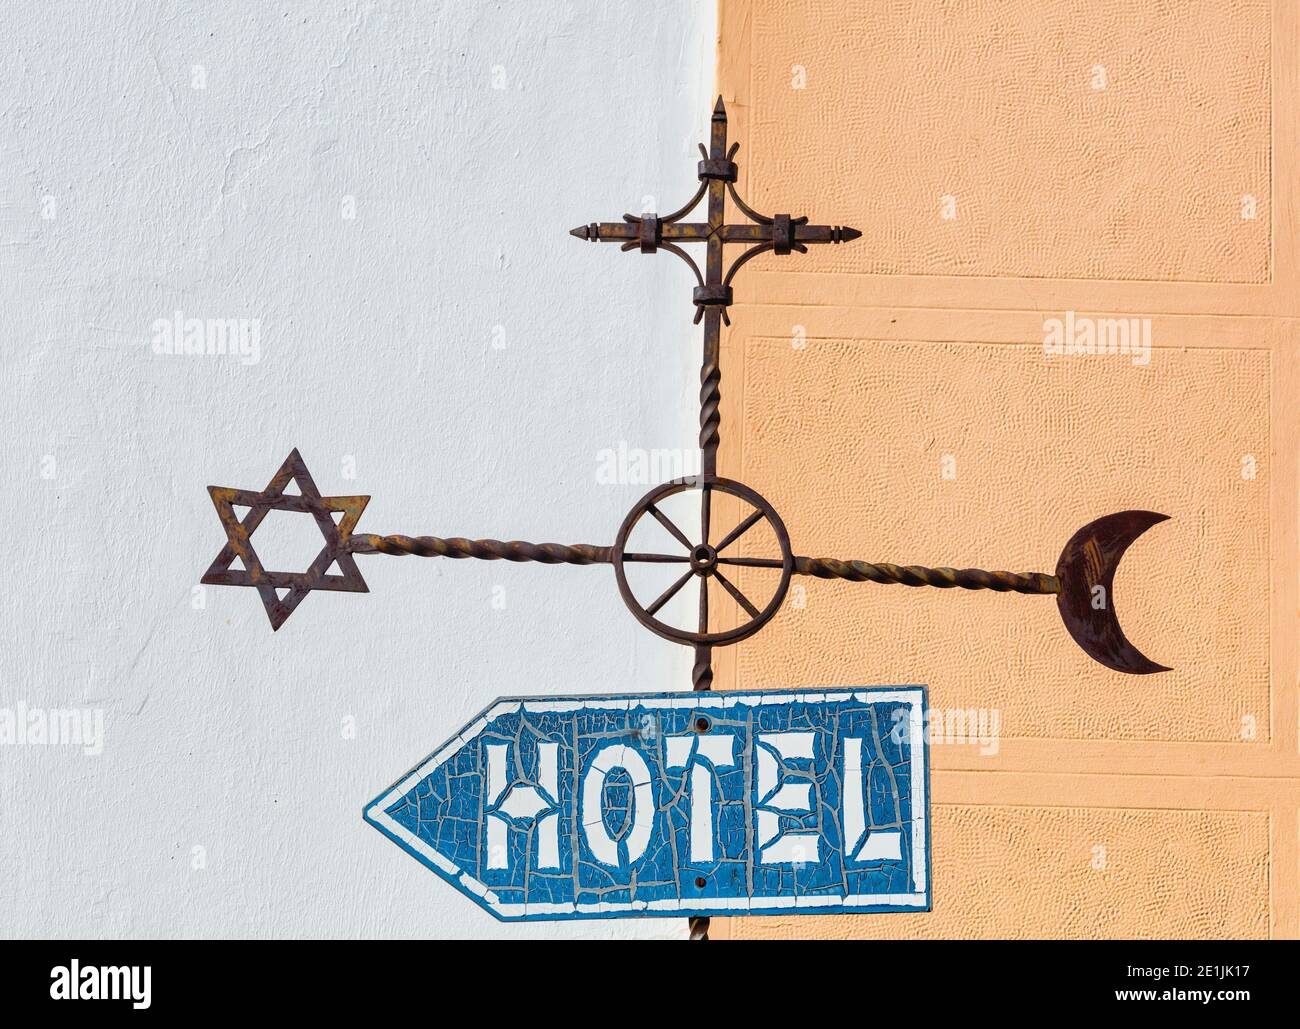 Ronda, province de Malaga, Andalousie, Espagne. Panneau de rue de l'hôtel avec des symboles islamiques, juifs et chrétiens qui font écho à l'histoire de la ville. Banque D'Images